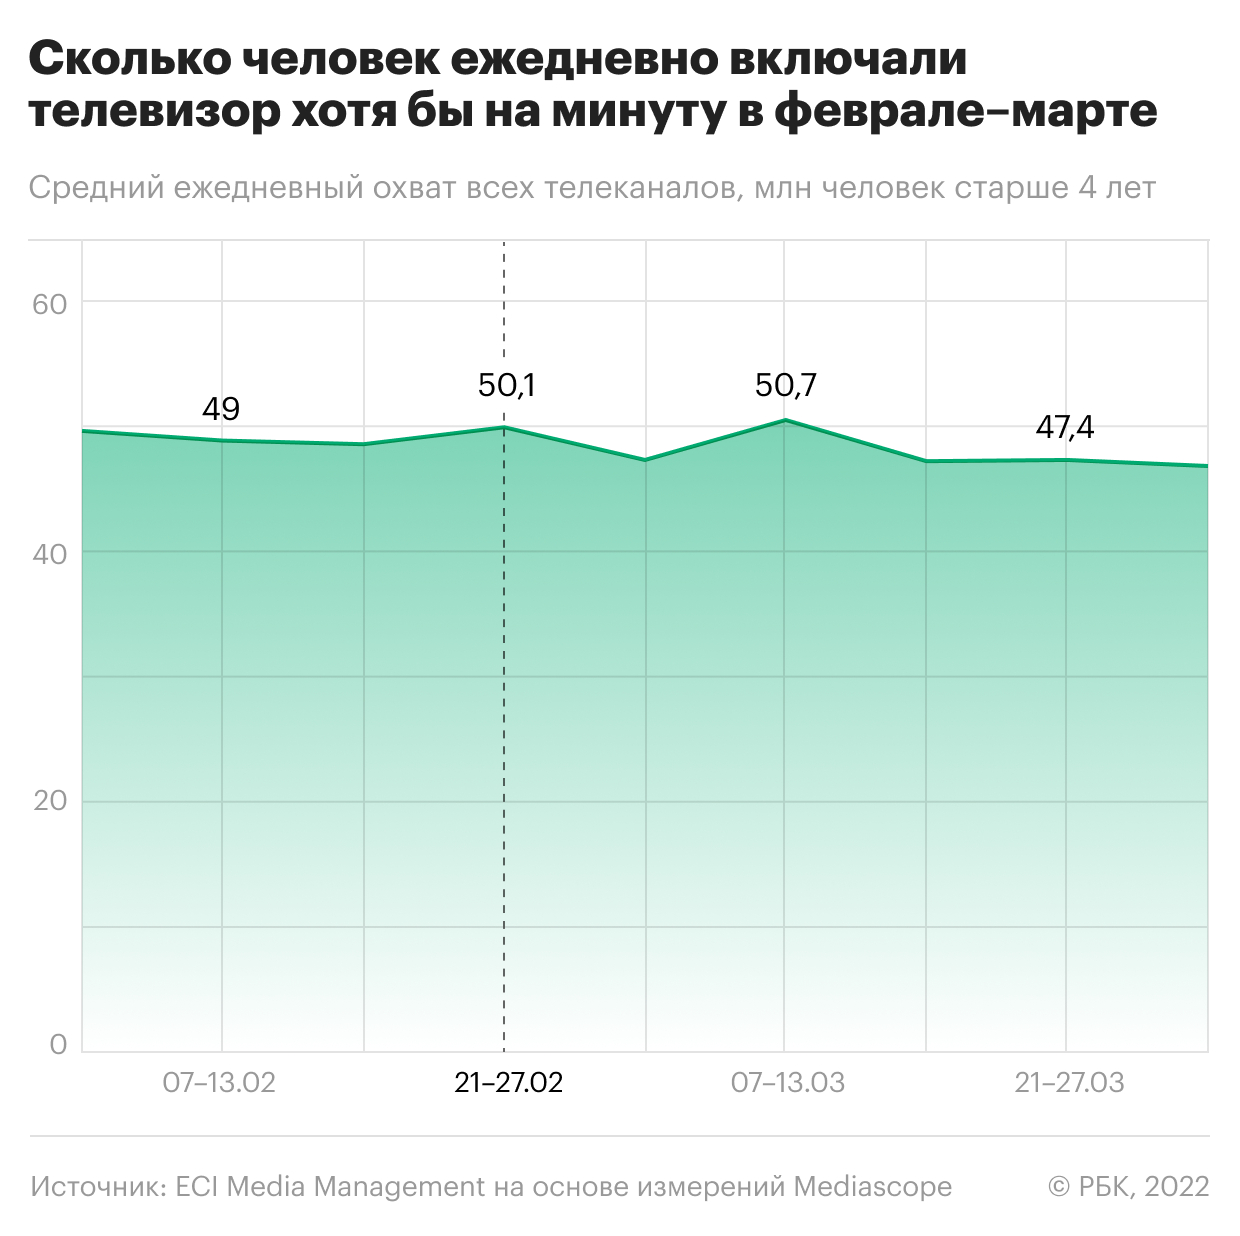 Как спецоперация изменила телевизионные предпочтения россиян. Инфографика